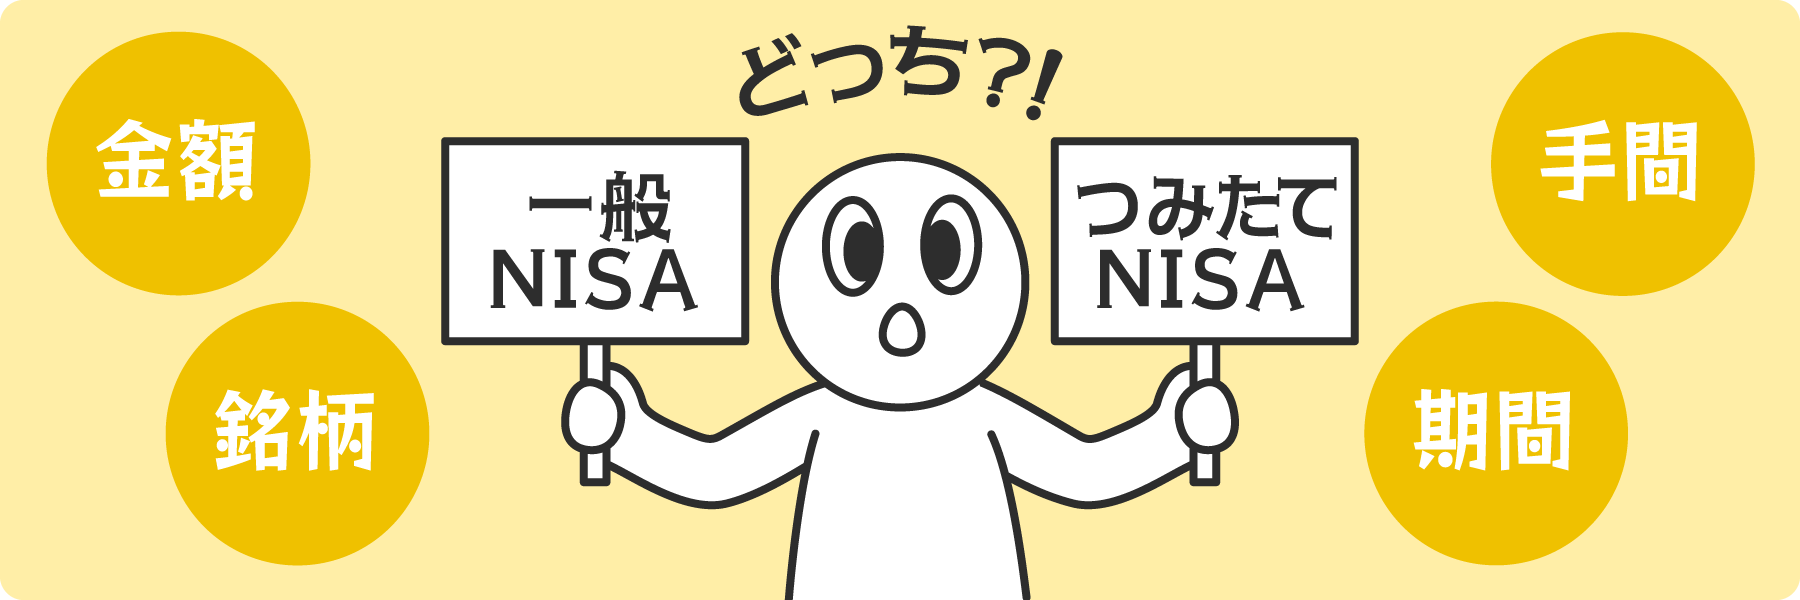 「一般NISA」と「つみたてNISA」の2種類